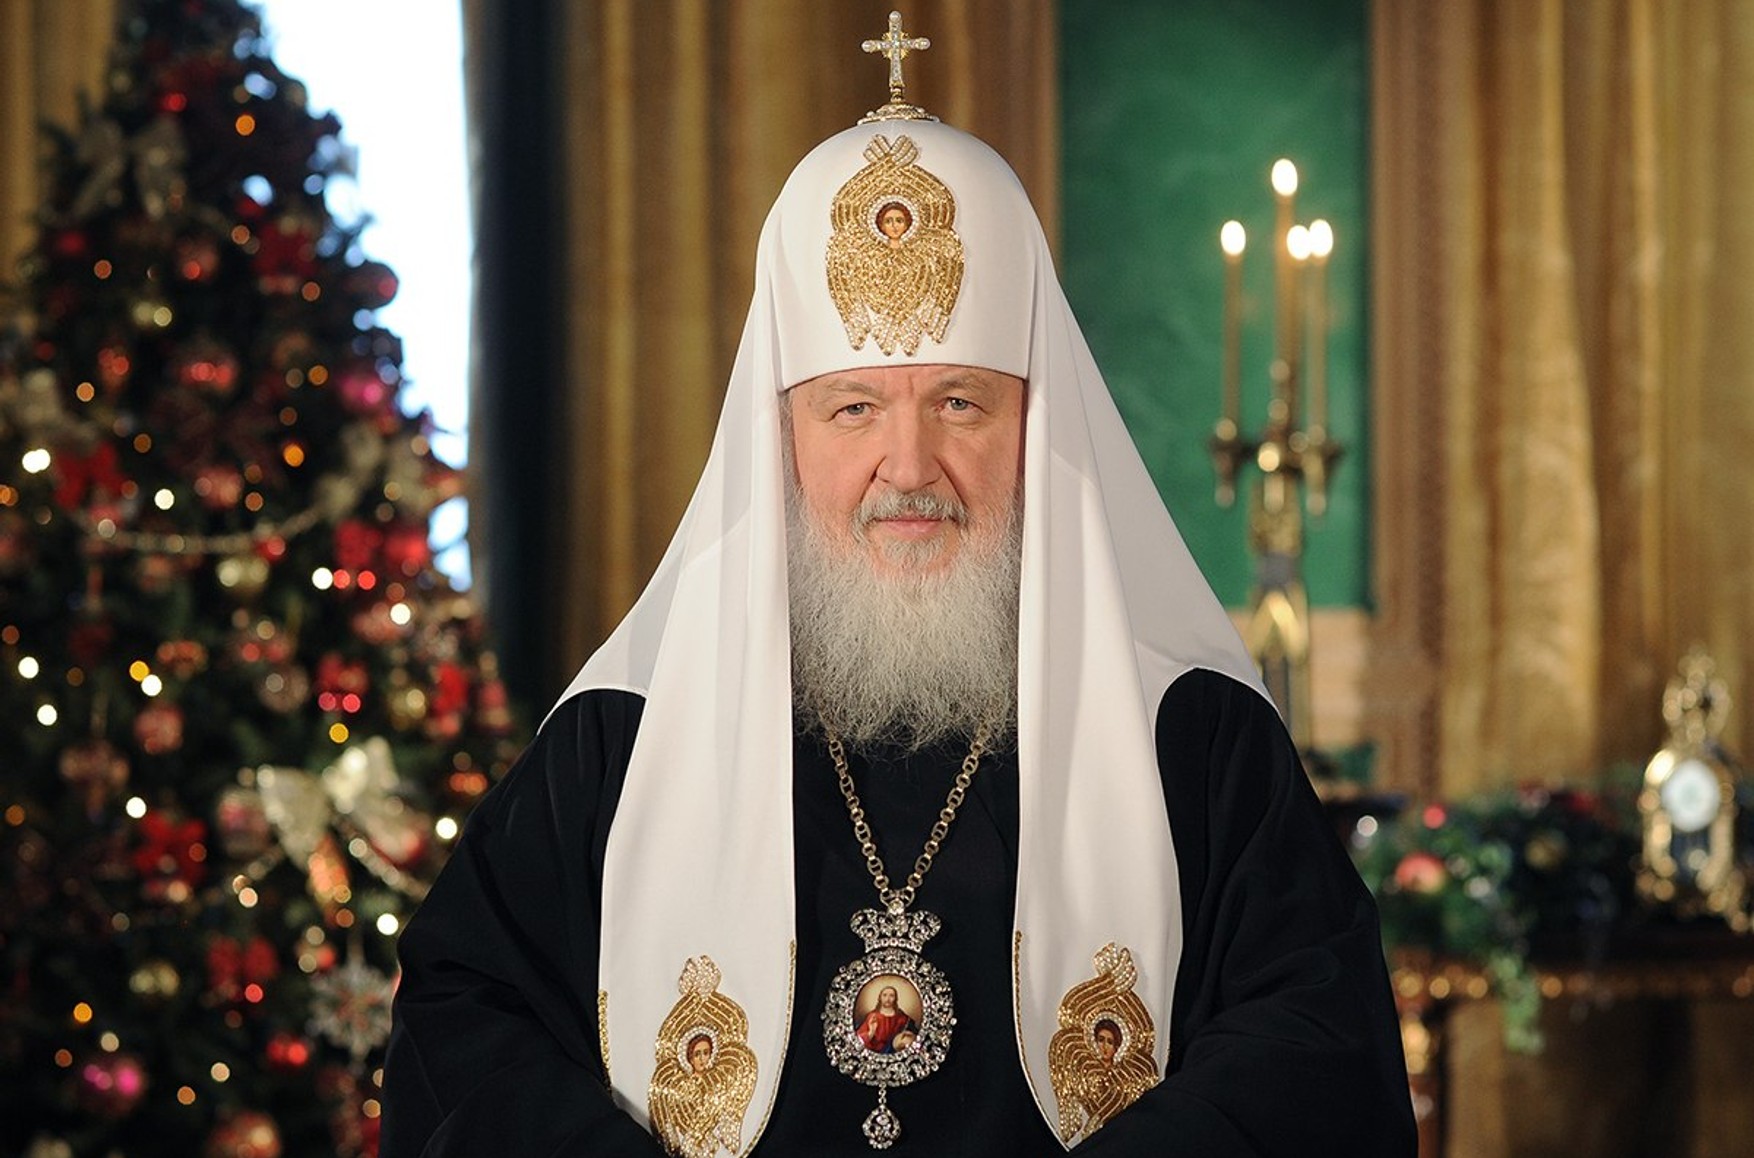 На «Разговорах о важном» школьникам показали обращение патриарха Кирилла — Sota